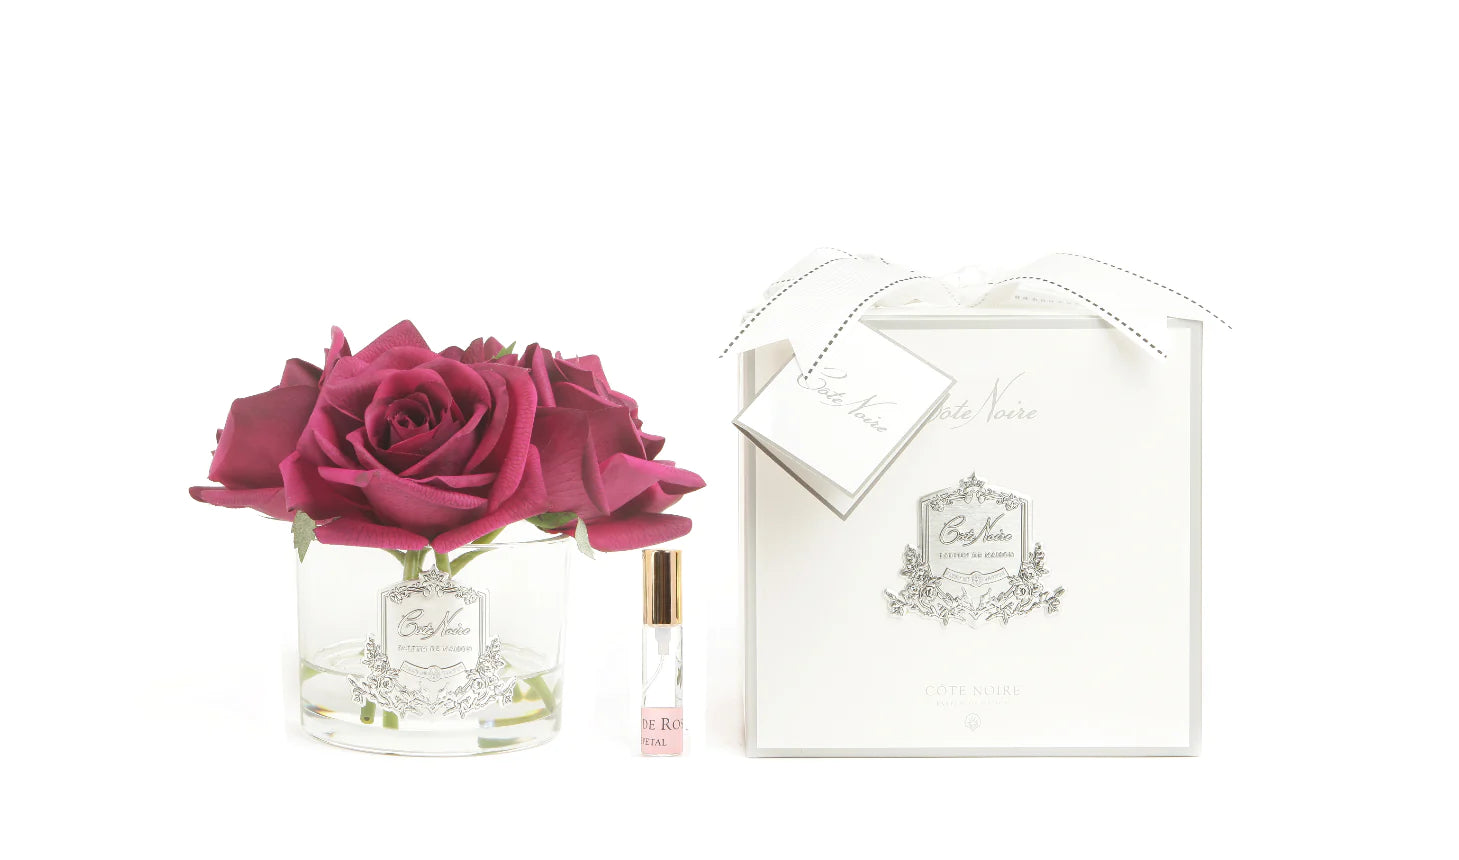 5 karminrote rosen mit in hellem glas mit silbernem emblem. dazu duftspray und weisse verpackung. weisser hintergrund.